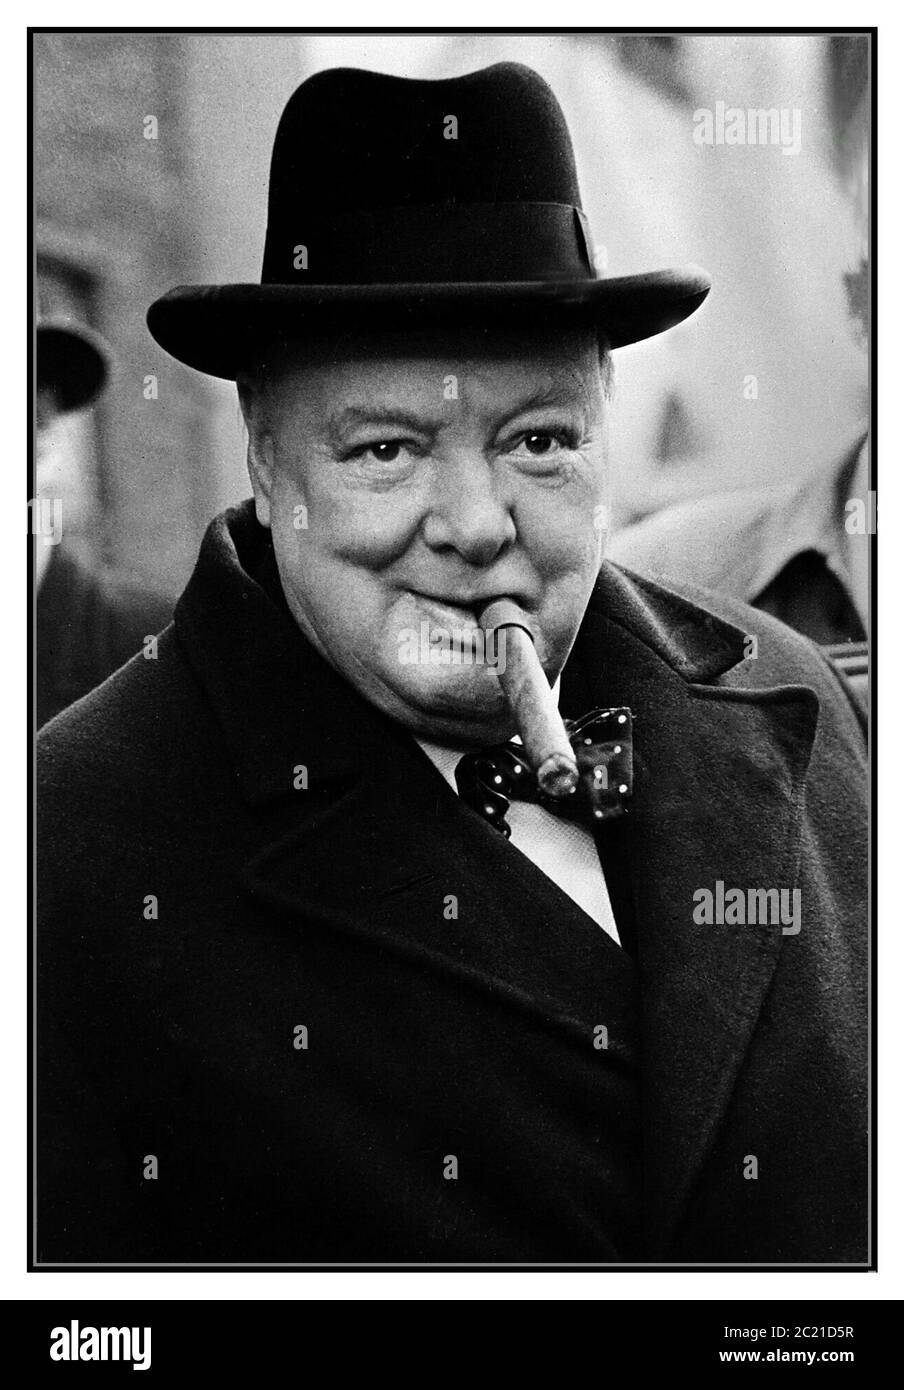 WINSTON CHURCHILL AVEC UN NOEUD À CIGARES ET HOMBURG HAT le plus grand et vénéré leader de la Grande-Bretagne en temps de guerre, dont les magnifiques discours ont galvanisé une nation à résister avec succès à l'agression de l'Allemagne nazie de la Seconde Guerre mondiale Cette image d'après-guerre 1947/1948 le trouve fumer son cigare cubain favori et signature. Churchill a été fait chevalier pour ses services à la Grande-Bretagne, comme Sir Winston Leonard Spencer Churchill. Un grand homme d'État anglais écrivain et artiste peintre (1874-1965). Banque D'Images